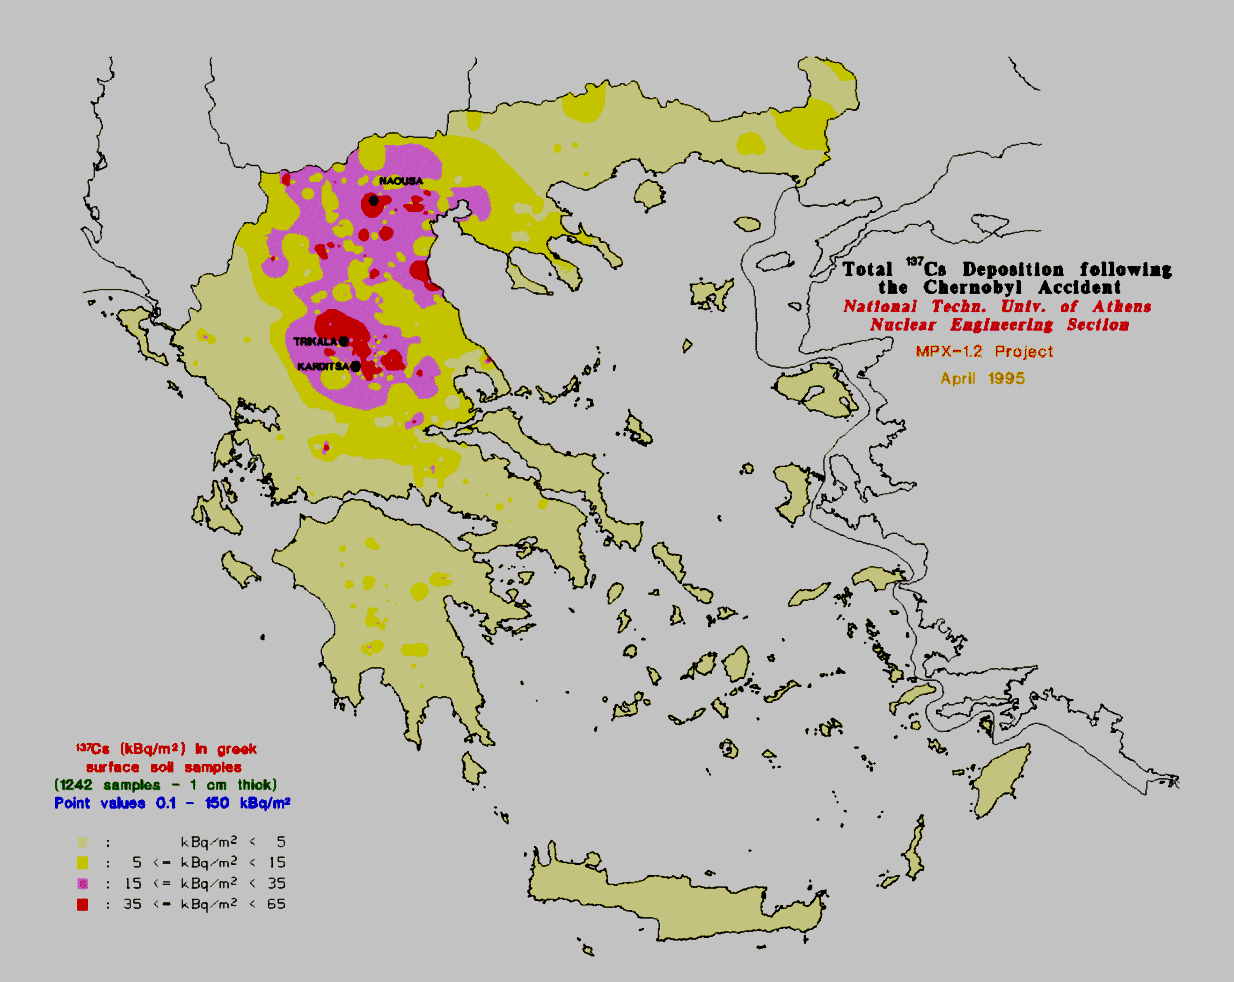 Σχήμα.1. Συνολική απόθεση 137 Cs στην ελληνική επικράτεια, μετά το ατύχημα του Chernobyl [Simopoulos (1989)].